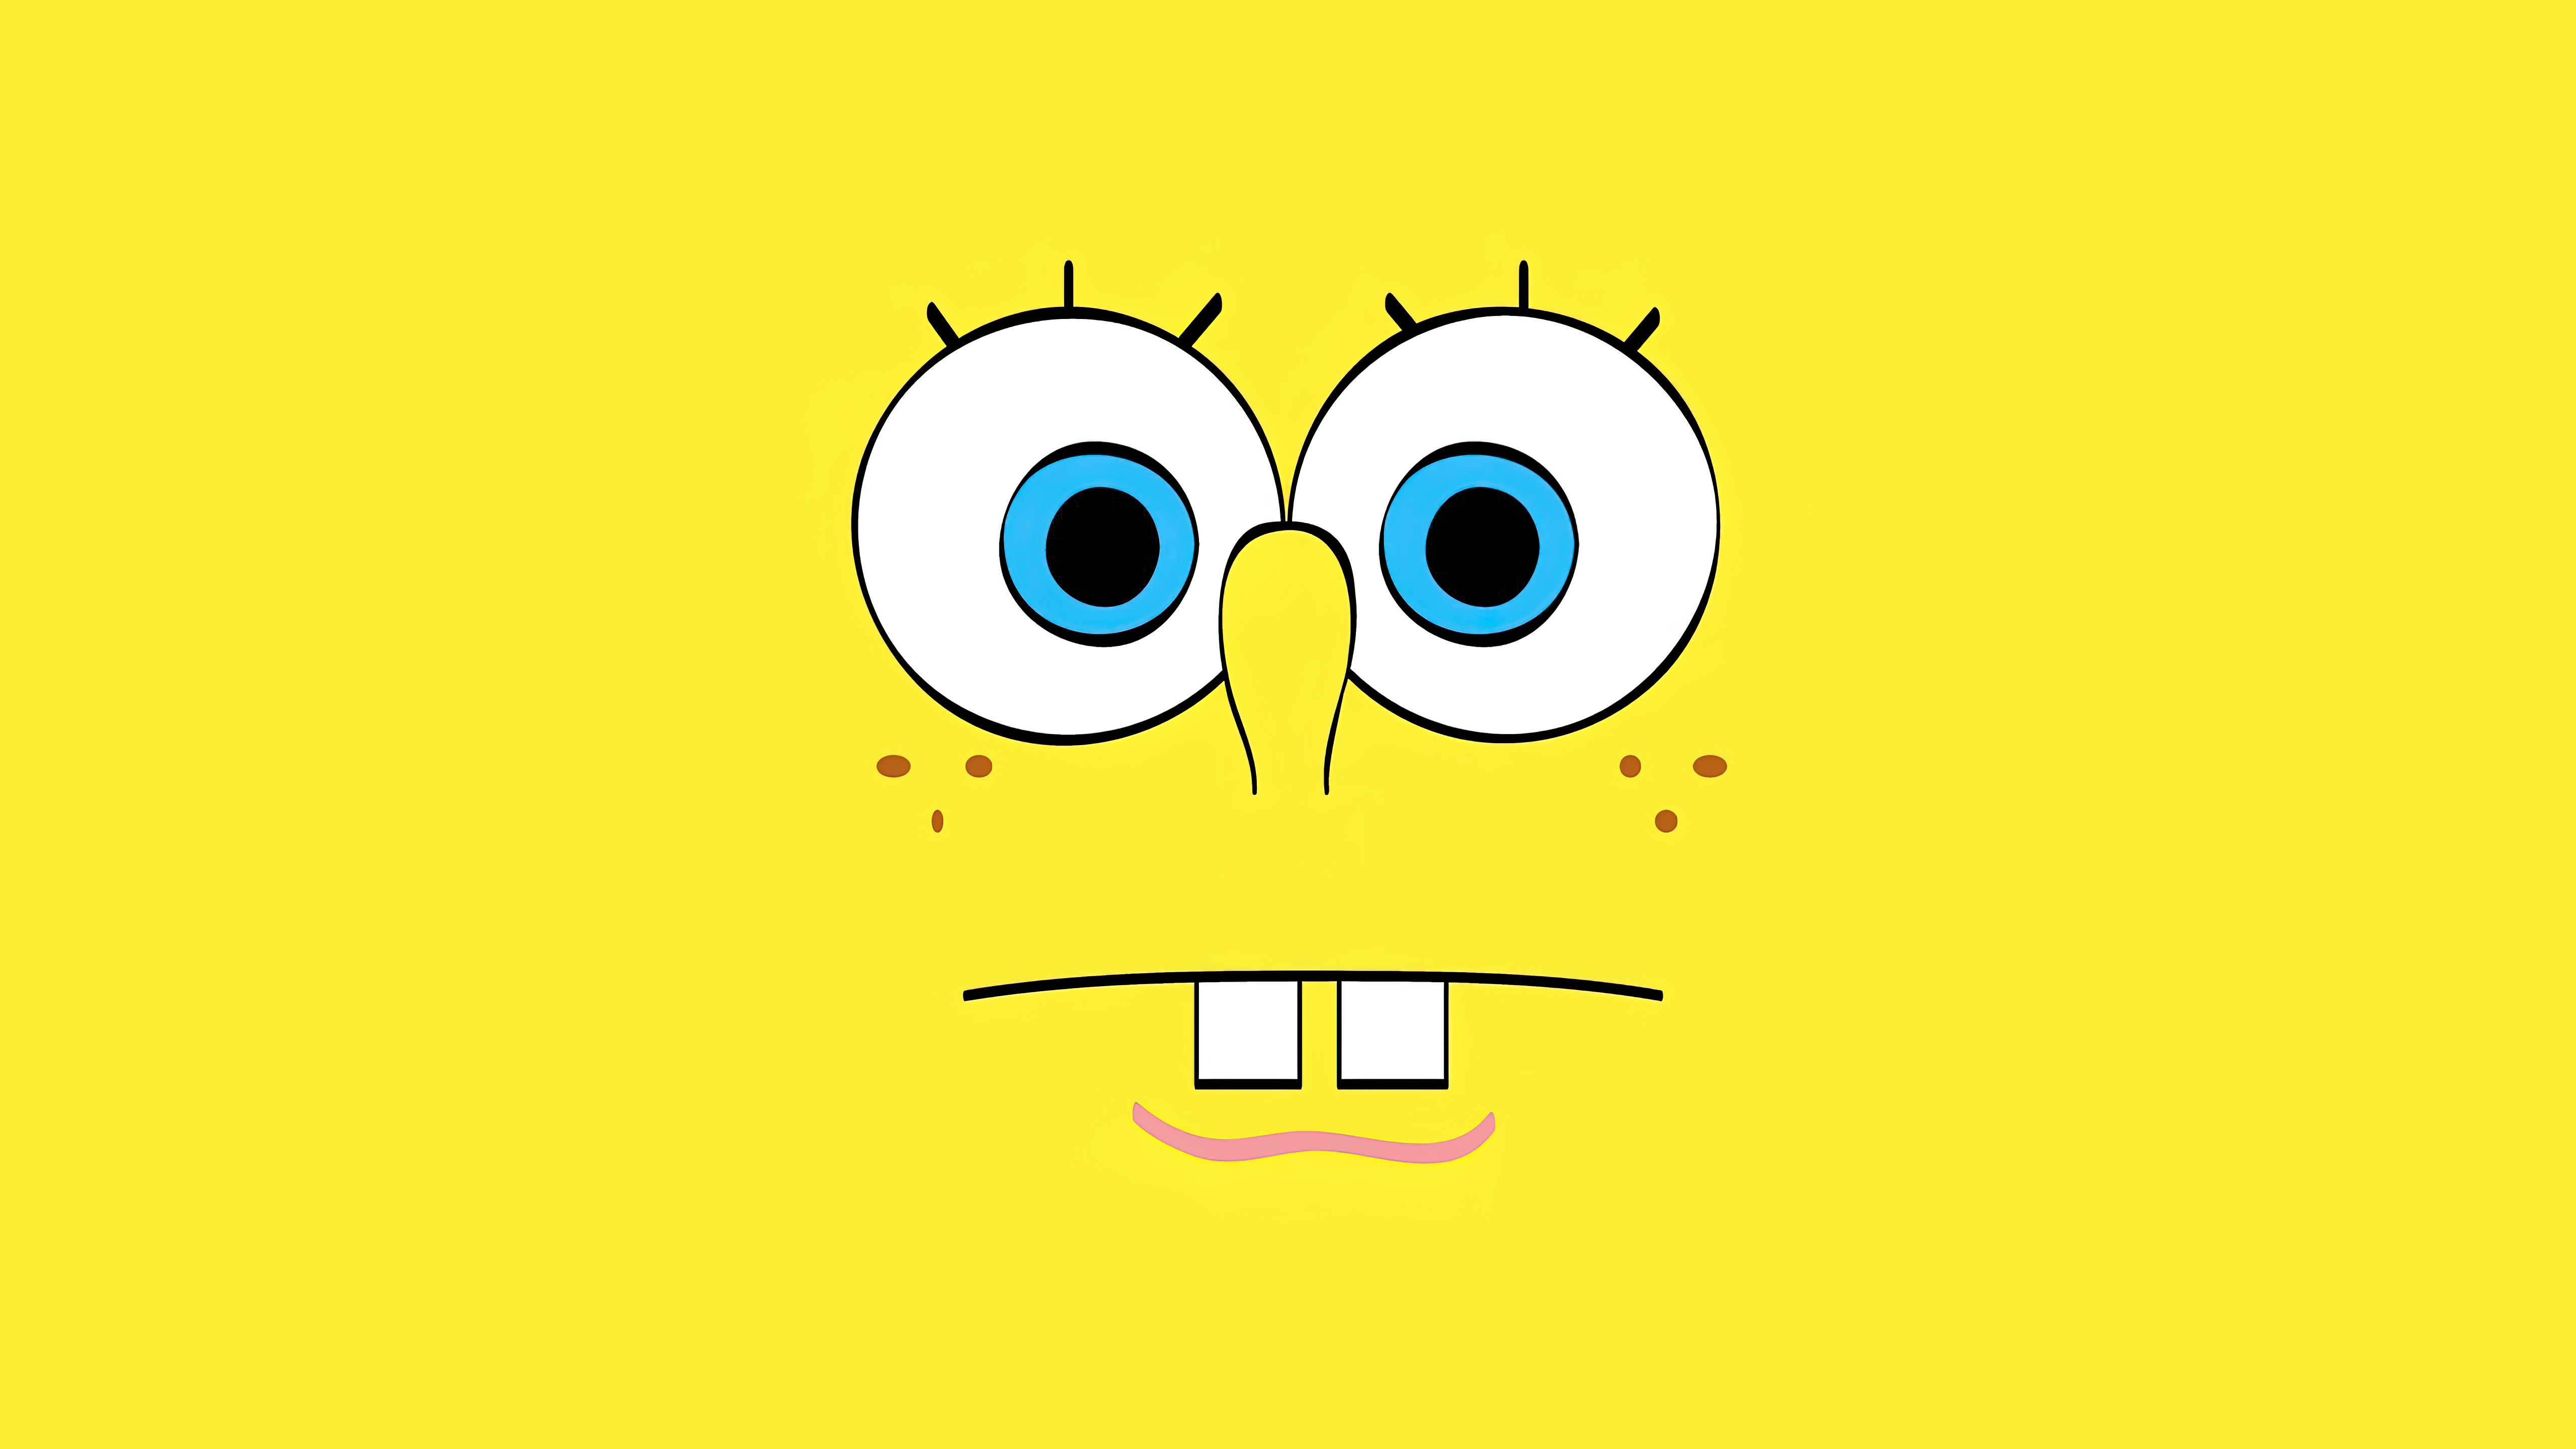 Hãy trang trí điện thoại của bạn với hình nền SpongeBob đáng yêu nhất mọi thời đại! Wallpaper SpongeBob đầy màu sắc sẽ cho bạn cảm giác đáng yêu và tươi sáng sau mỗi lần nhìn vào điện thoại. Hãy thử một tấm hình nền SpongeBob ngay bây giờ và cùng thưởng thức sự dễ thương của chú biến hóa nhé!